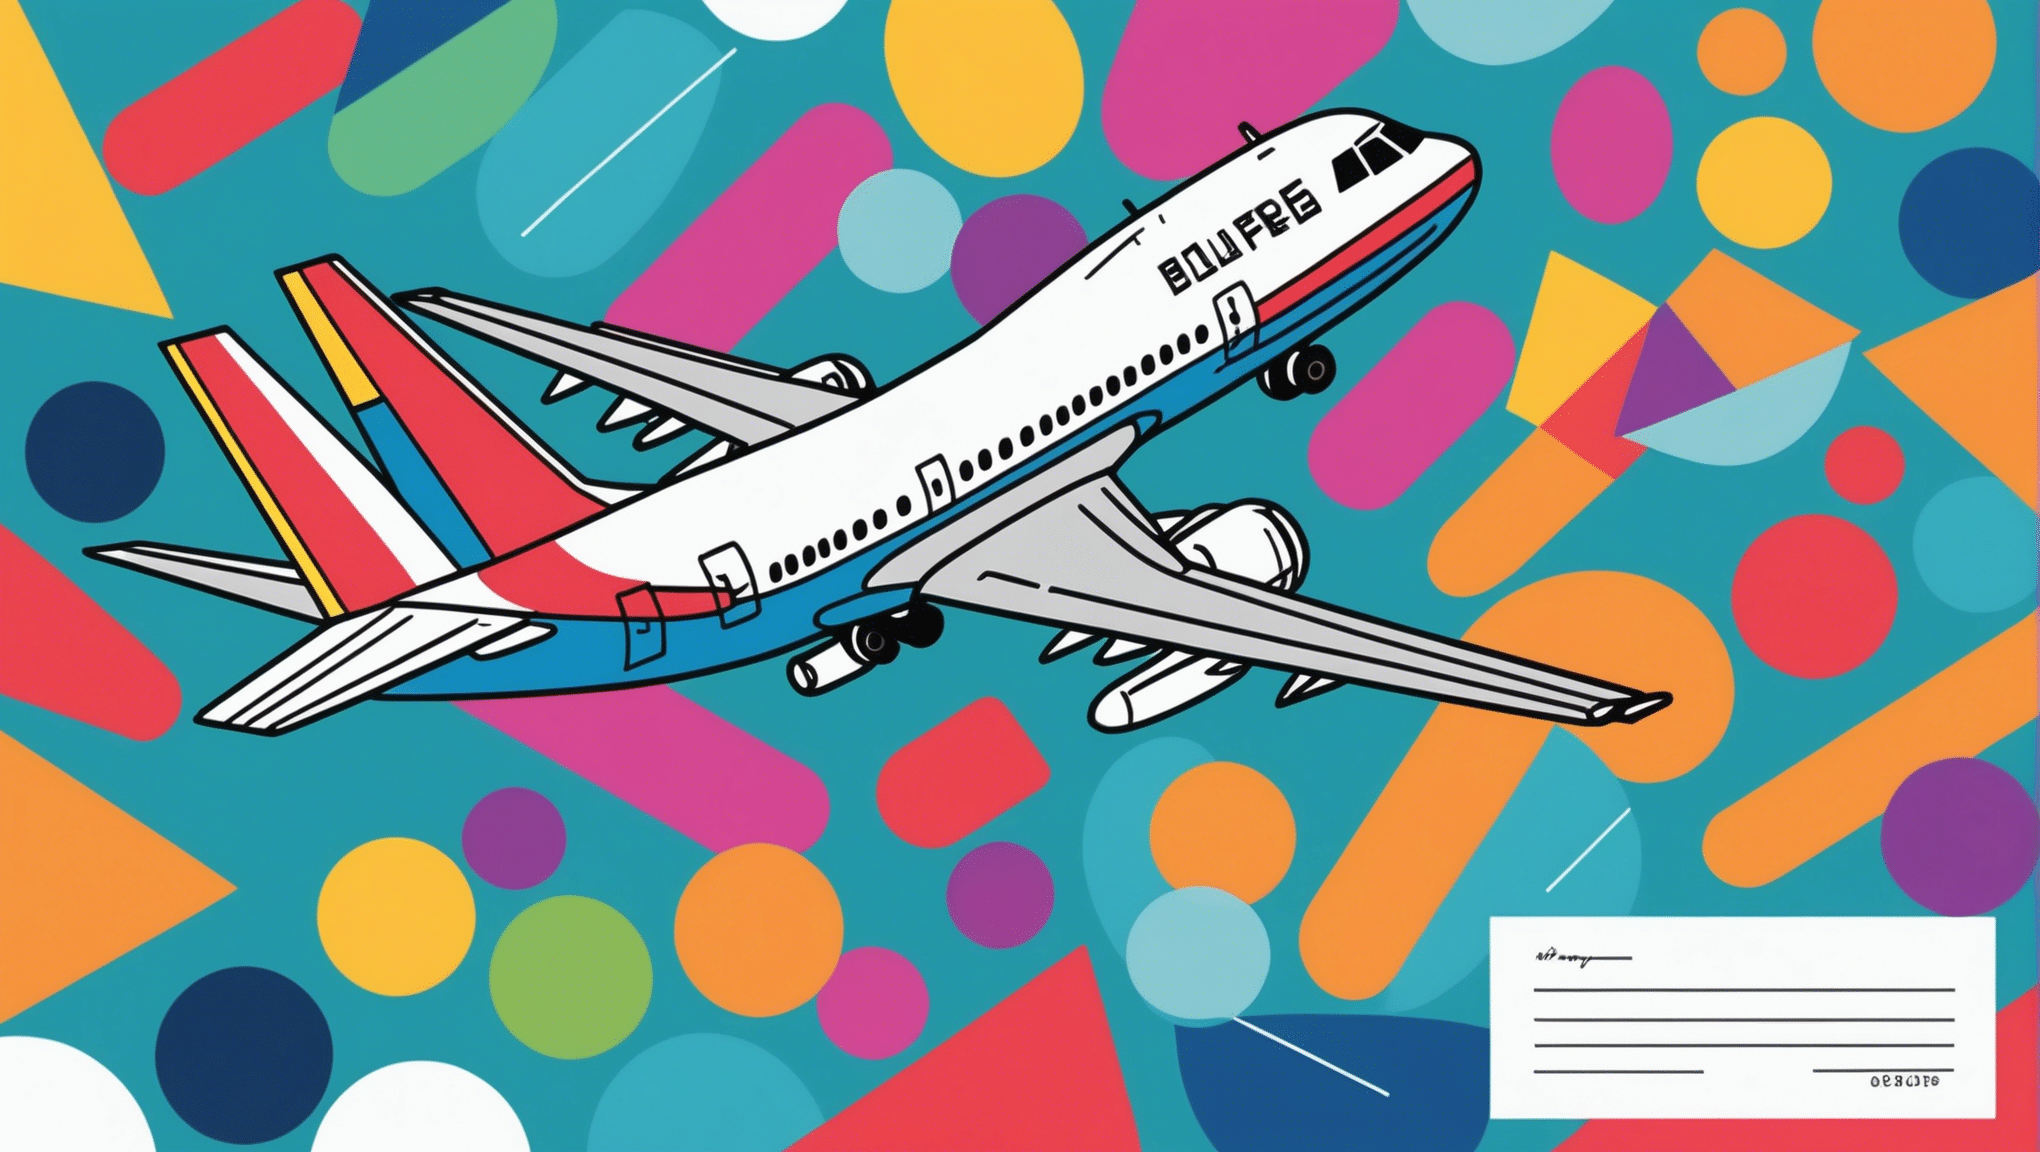 जानें कि अपना हवाई जहाज का टिकट बुक करने और अपनी अगली यात्रा के लिए सही समय कैसे बचाएं।